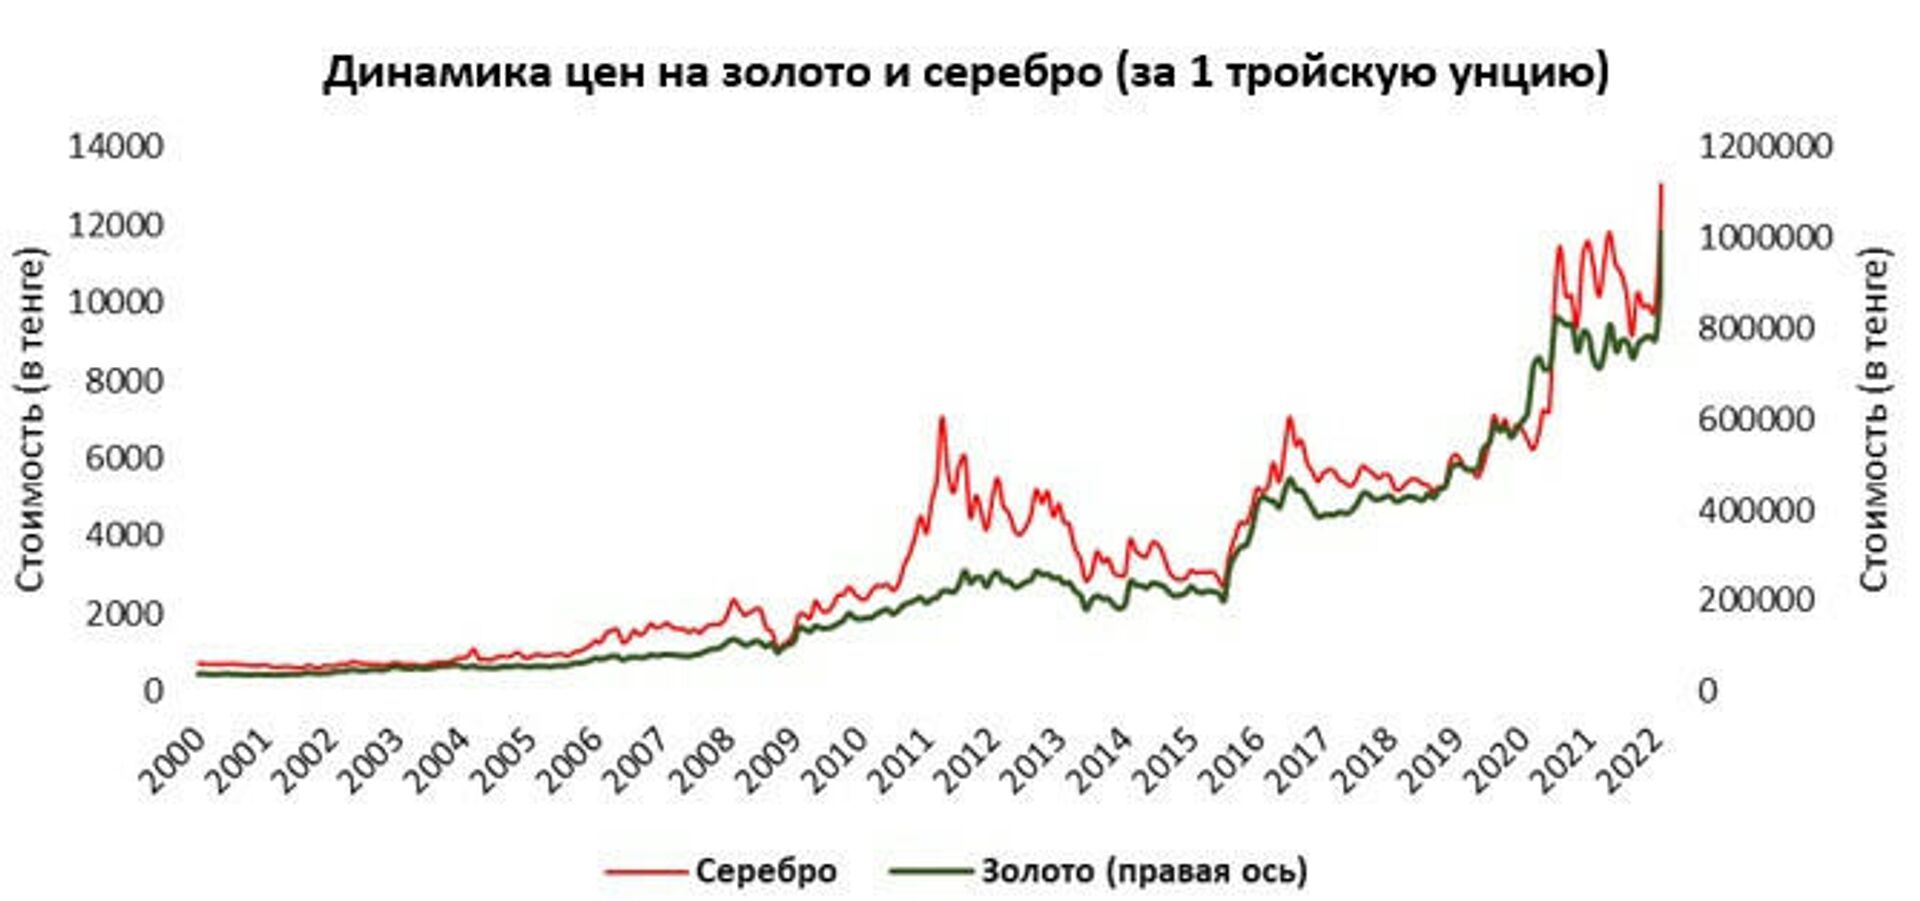 Инвестирование в золото и серебро позволяет обеспечить сохранность вложений от инфляции и валютного риска, считают в Нацбанке Казахстана - Sputnik Казахстан, 1920, 25.03.2022